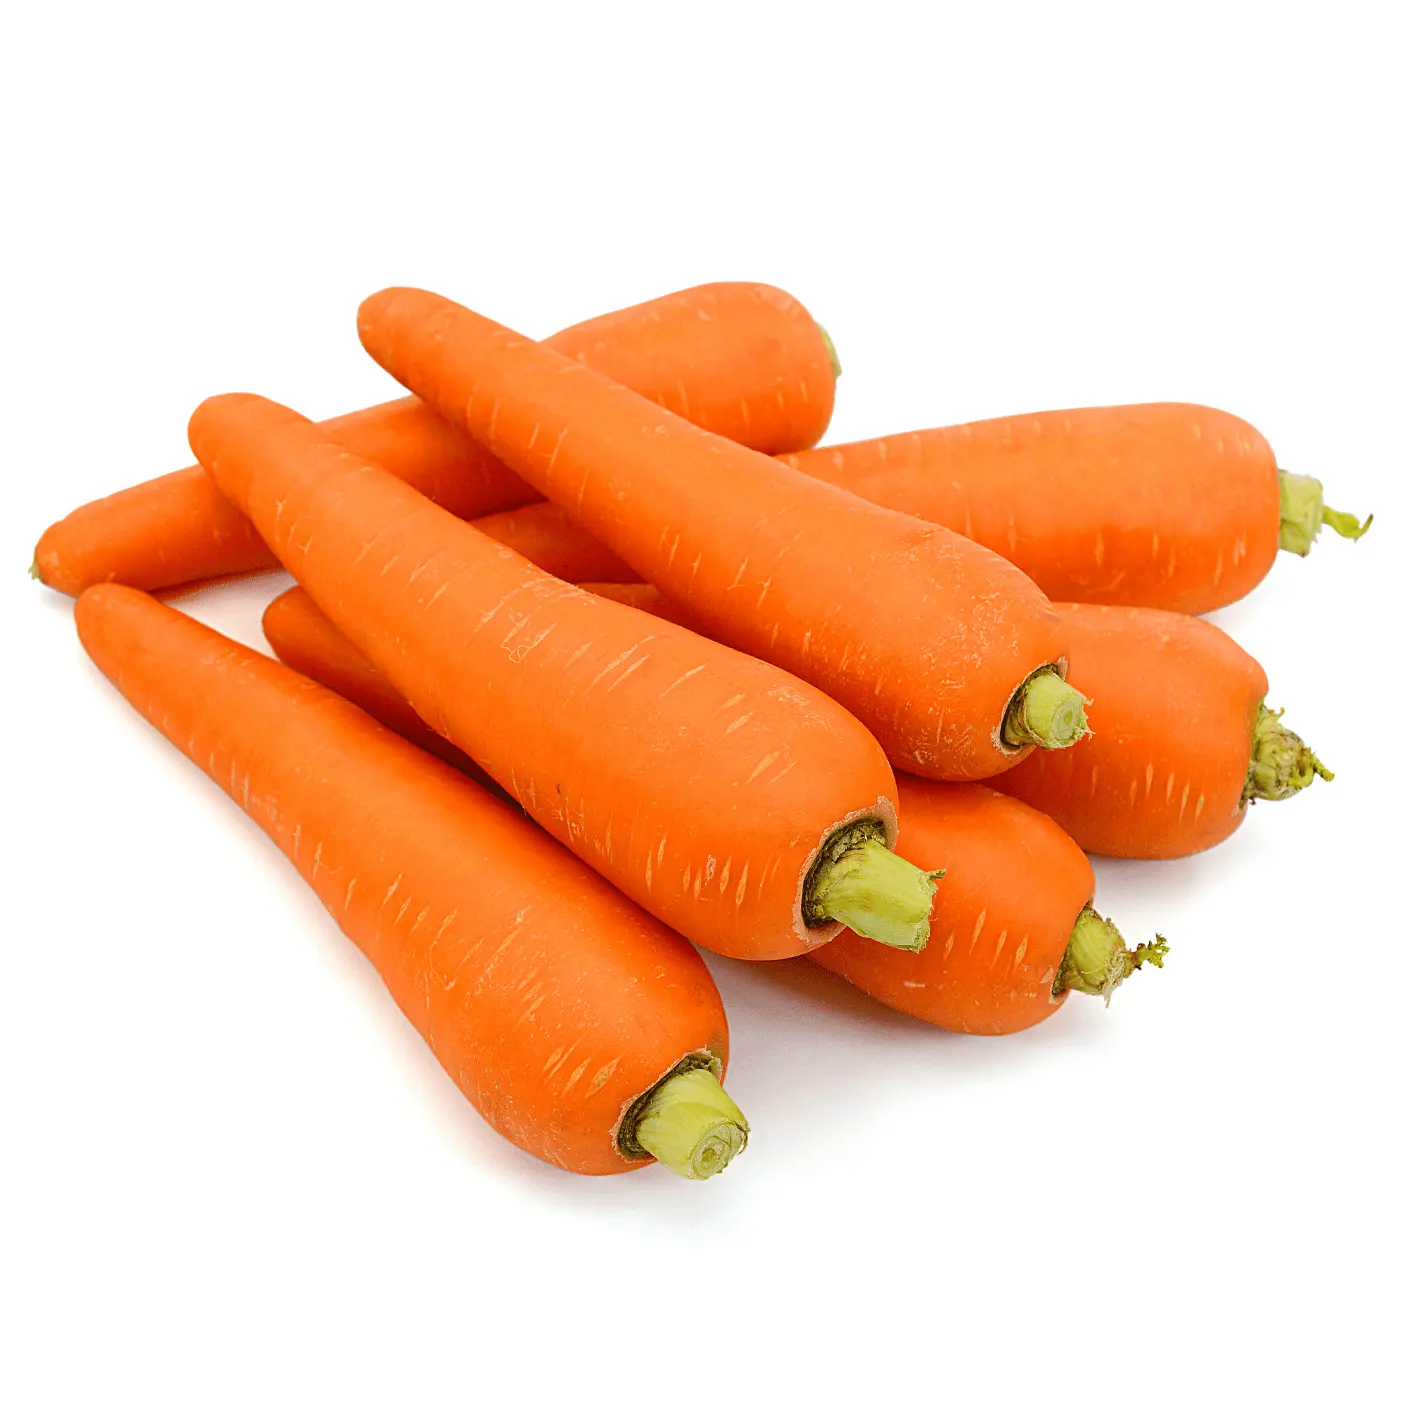 Carota all'ingrosso fresca buona carota economica che esporta in Vietnam/andrea 84 353991115